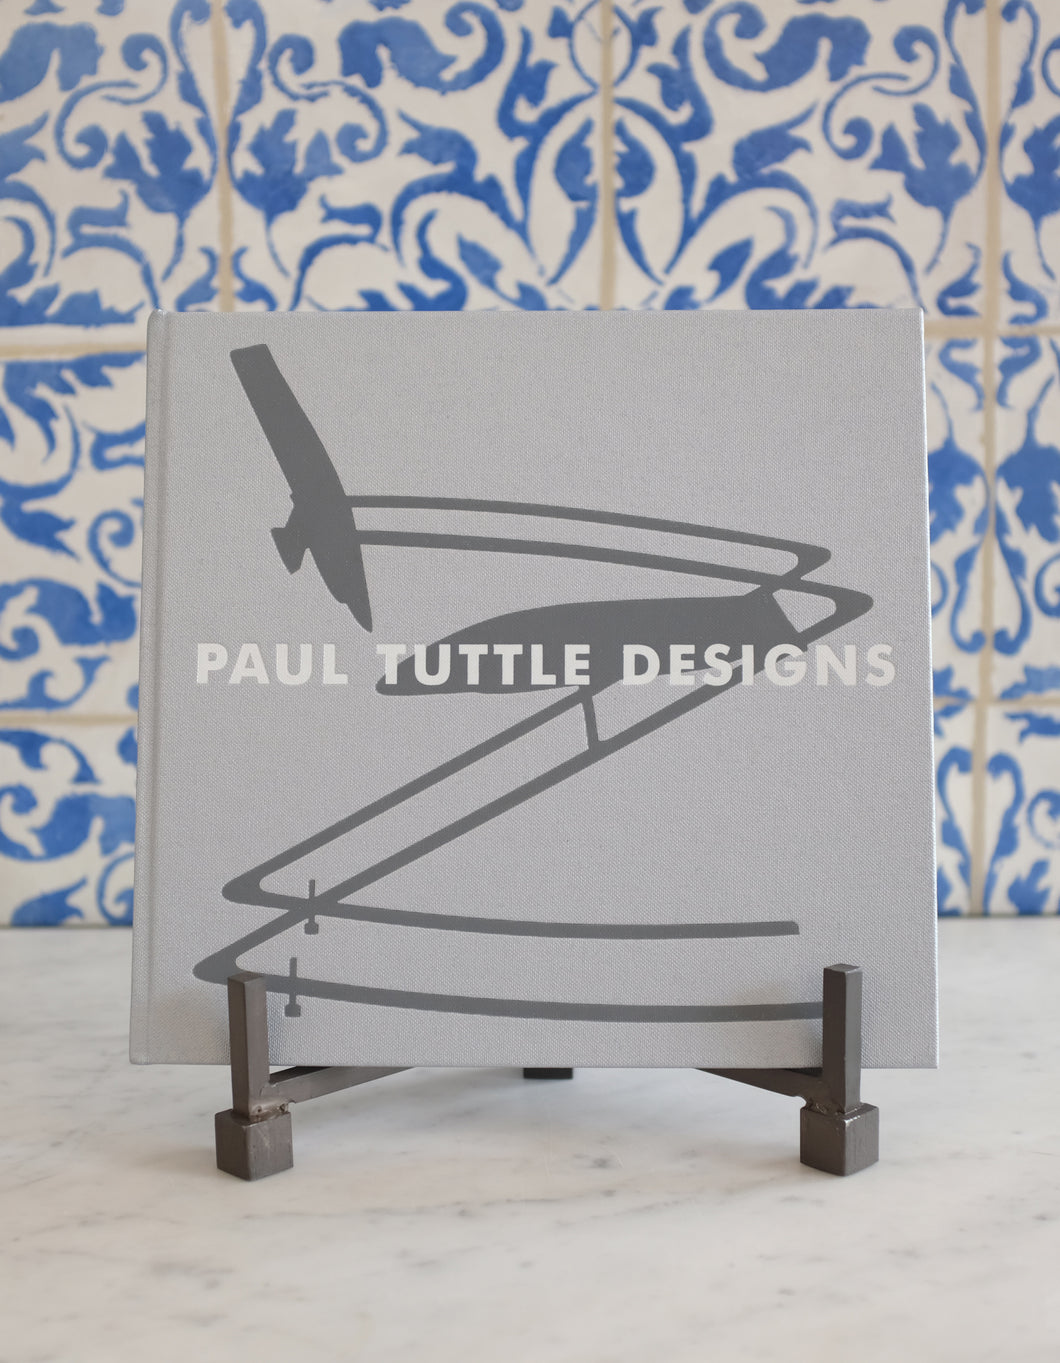 Paul Tuttle Designs